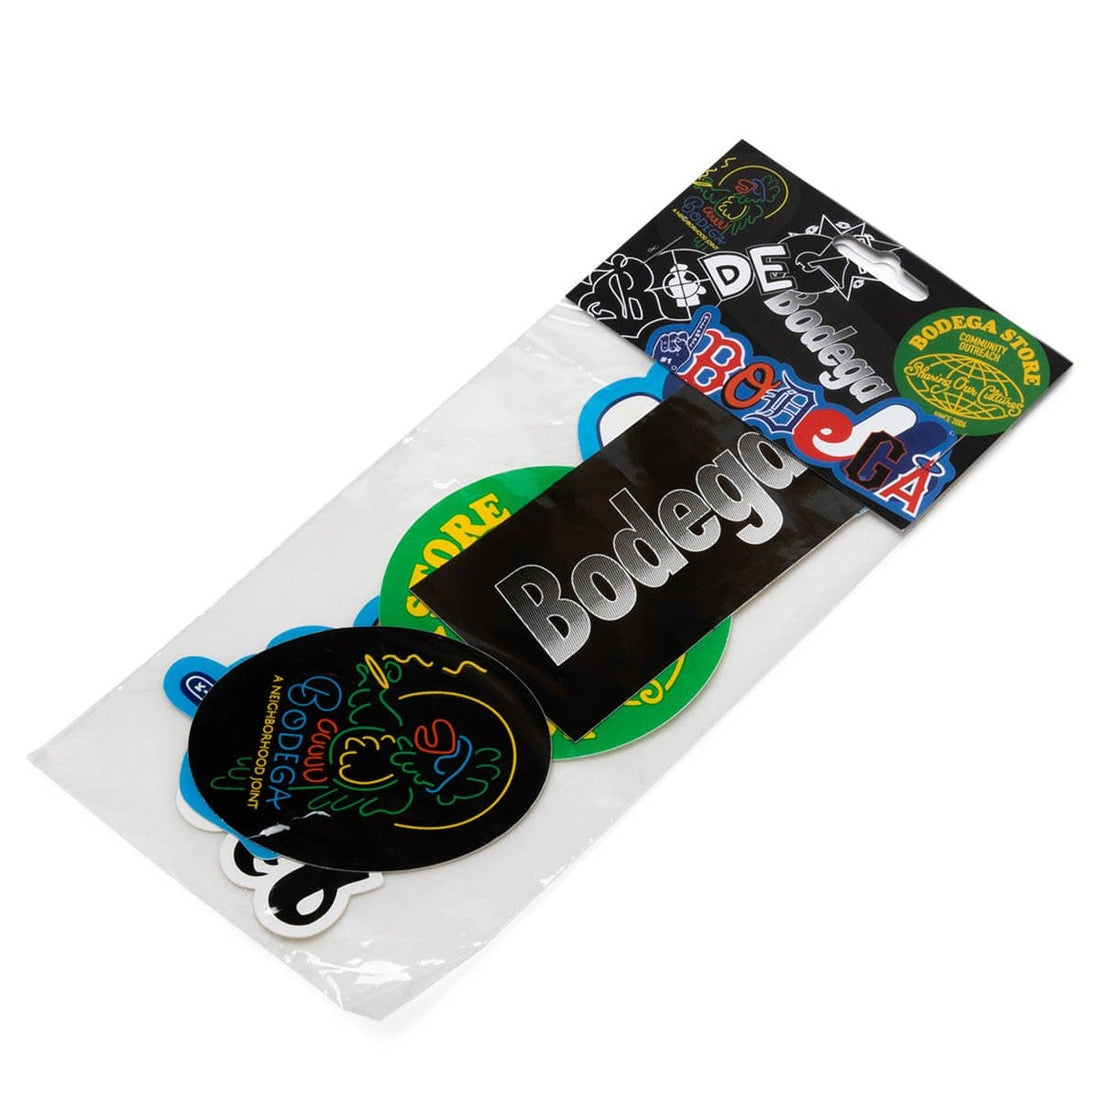 BDGA Sticker Pack Multi – Bodega